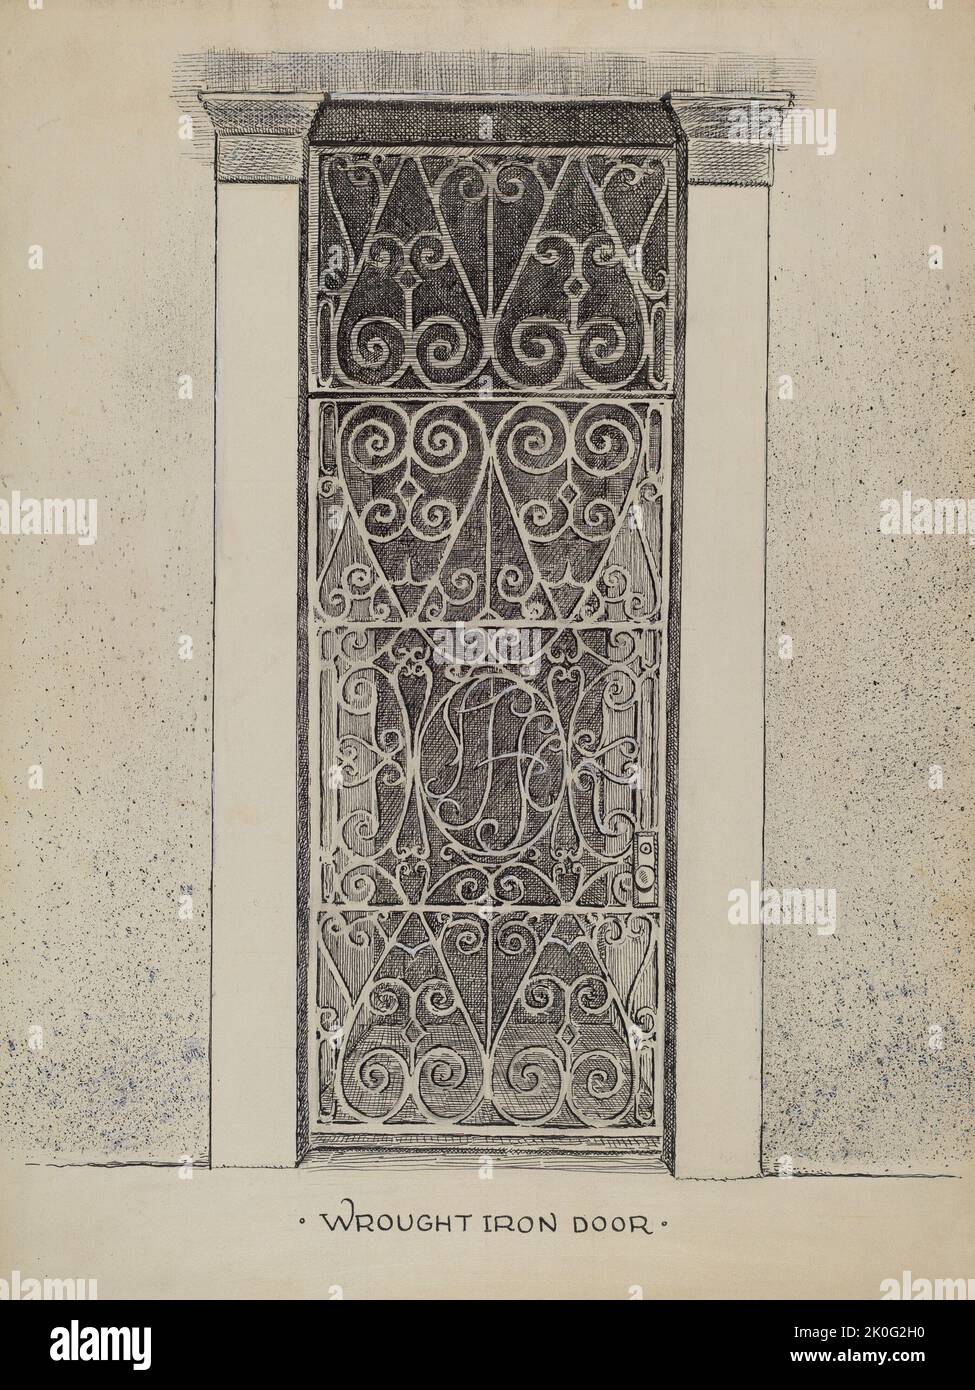 Wrought Iron Door, c. 1936. Stock Photo